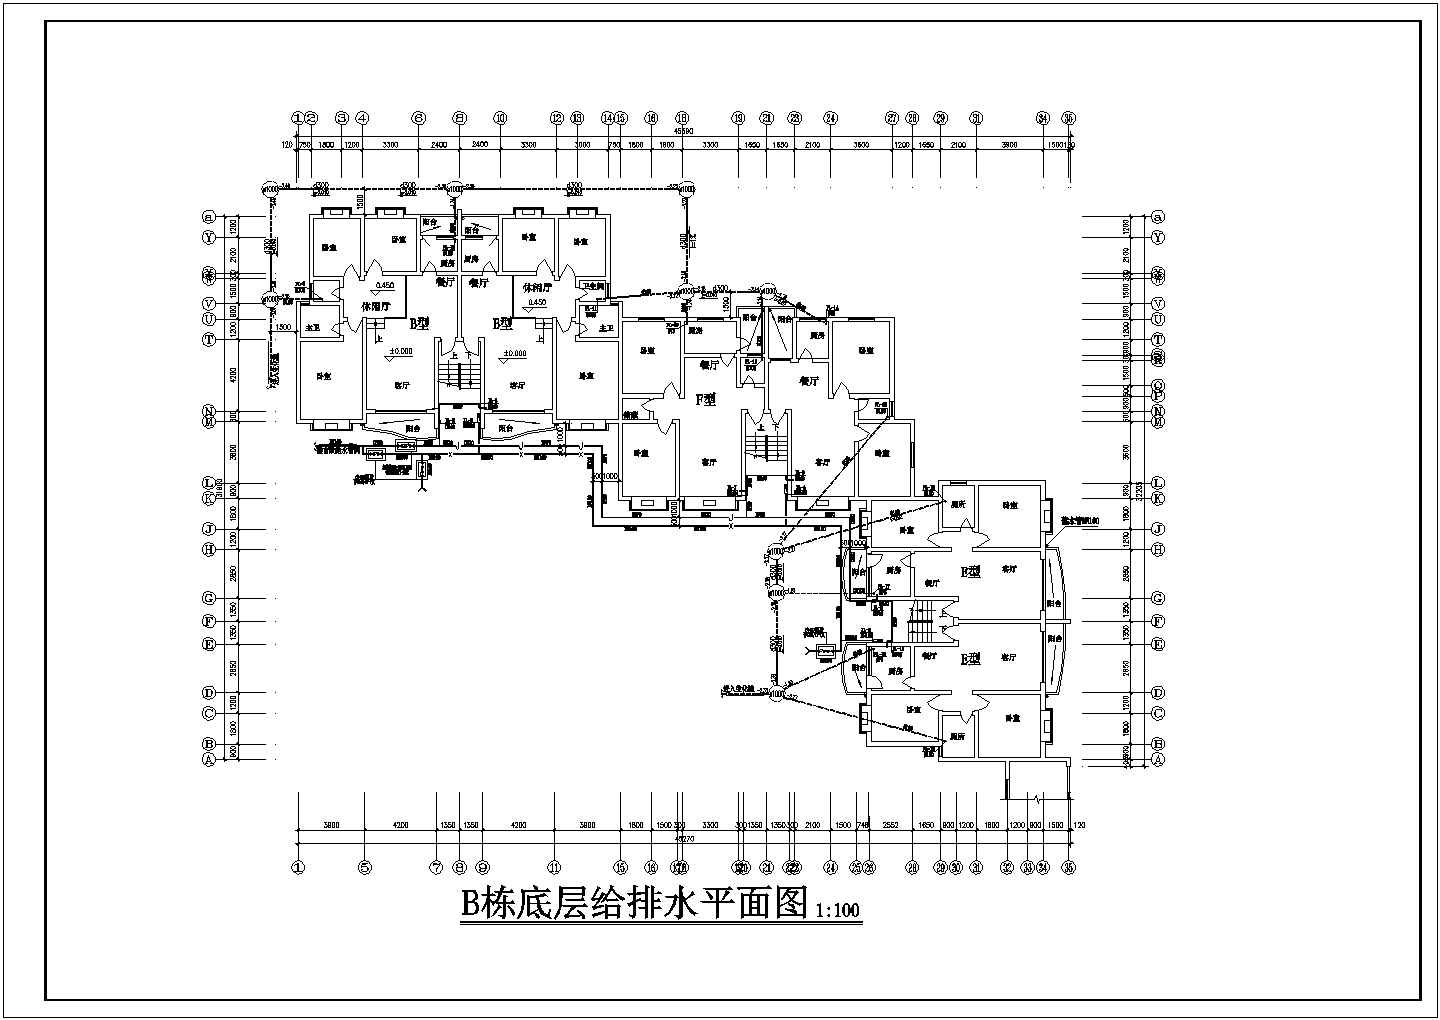 重庆某居民住房排水管道系统图